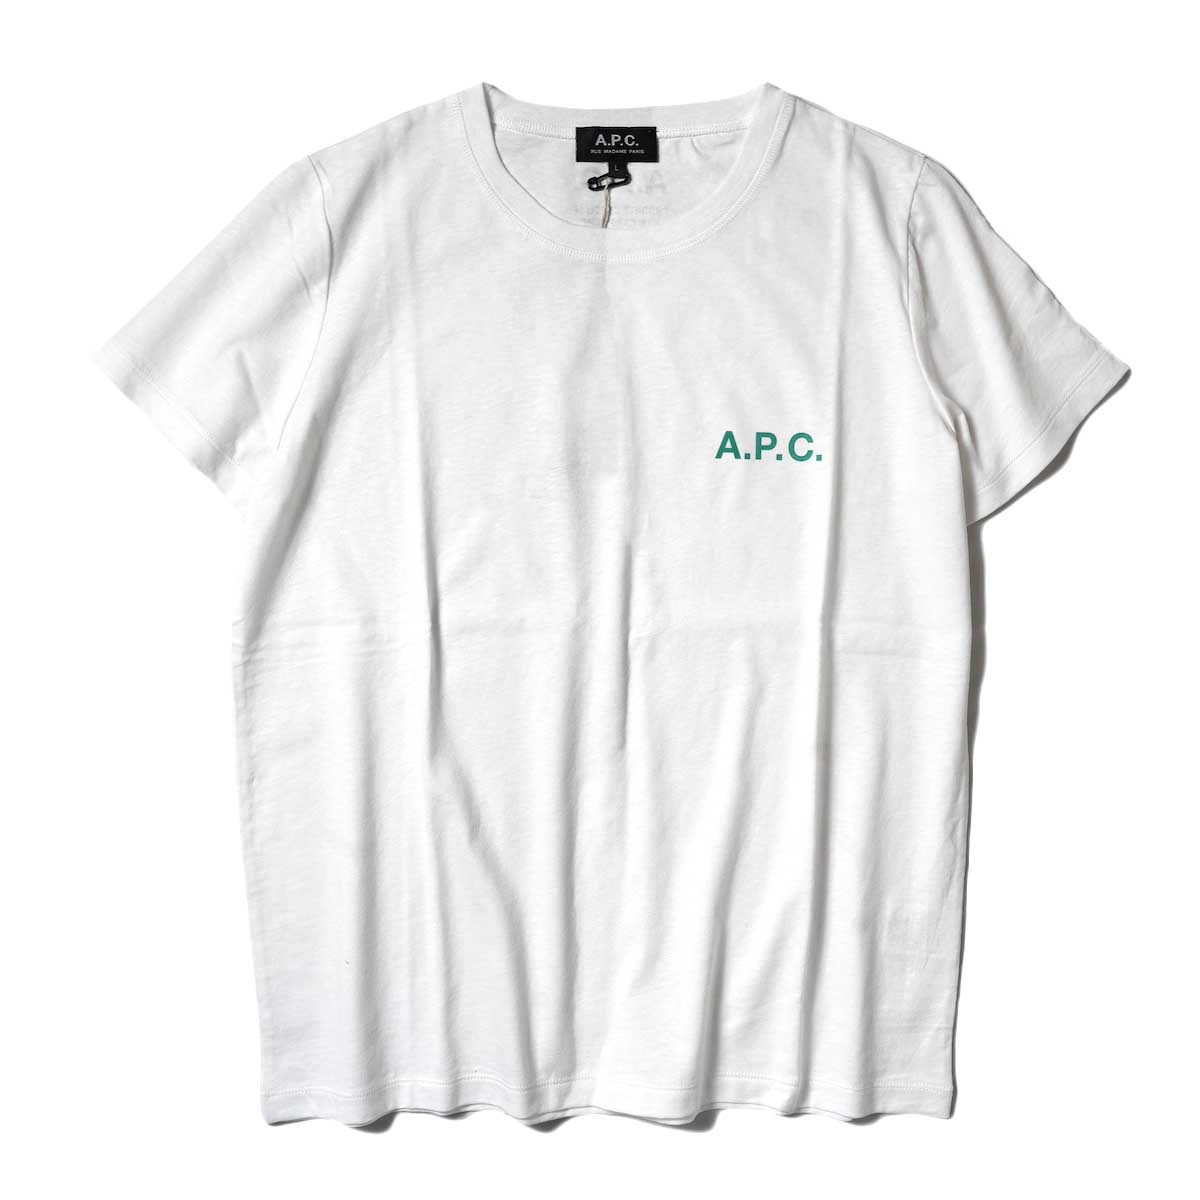 A.P.C. / Leanne Tシャツ (White)